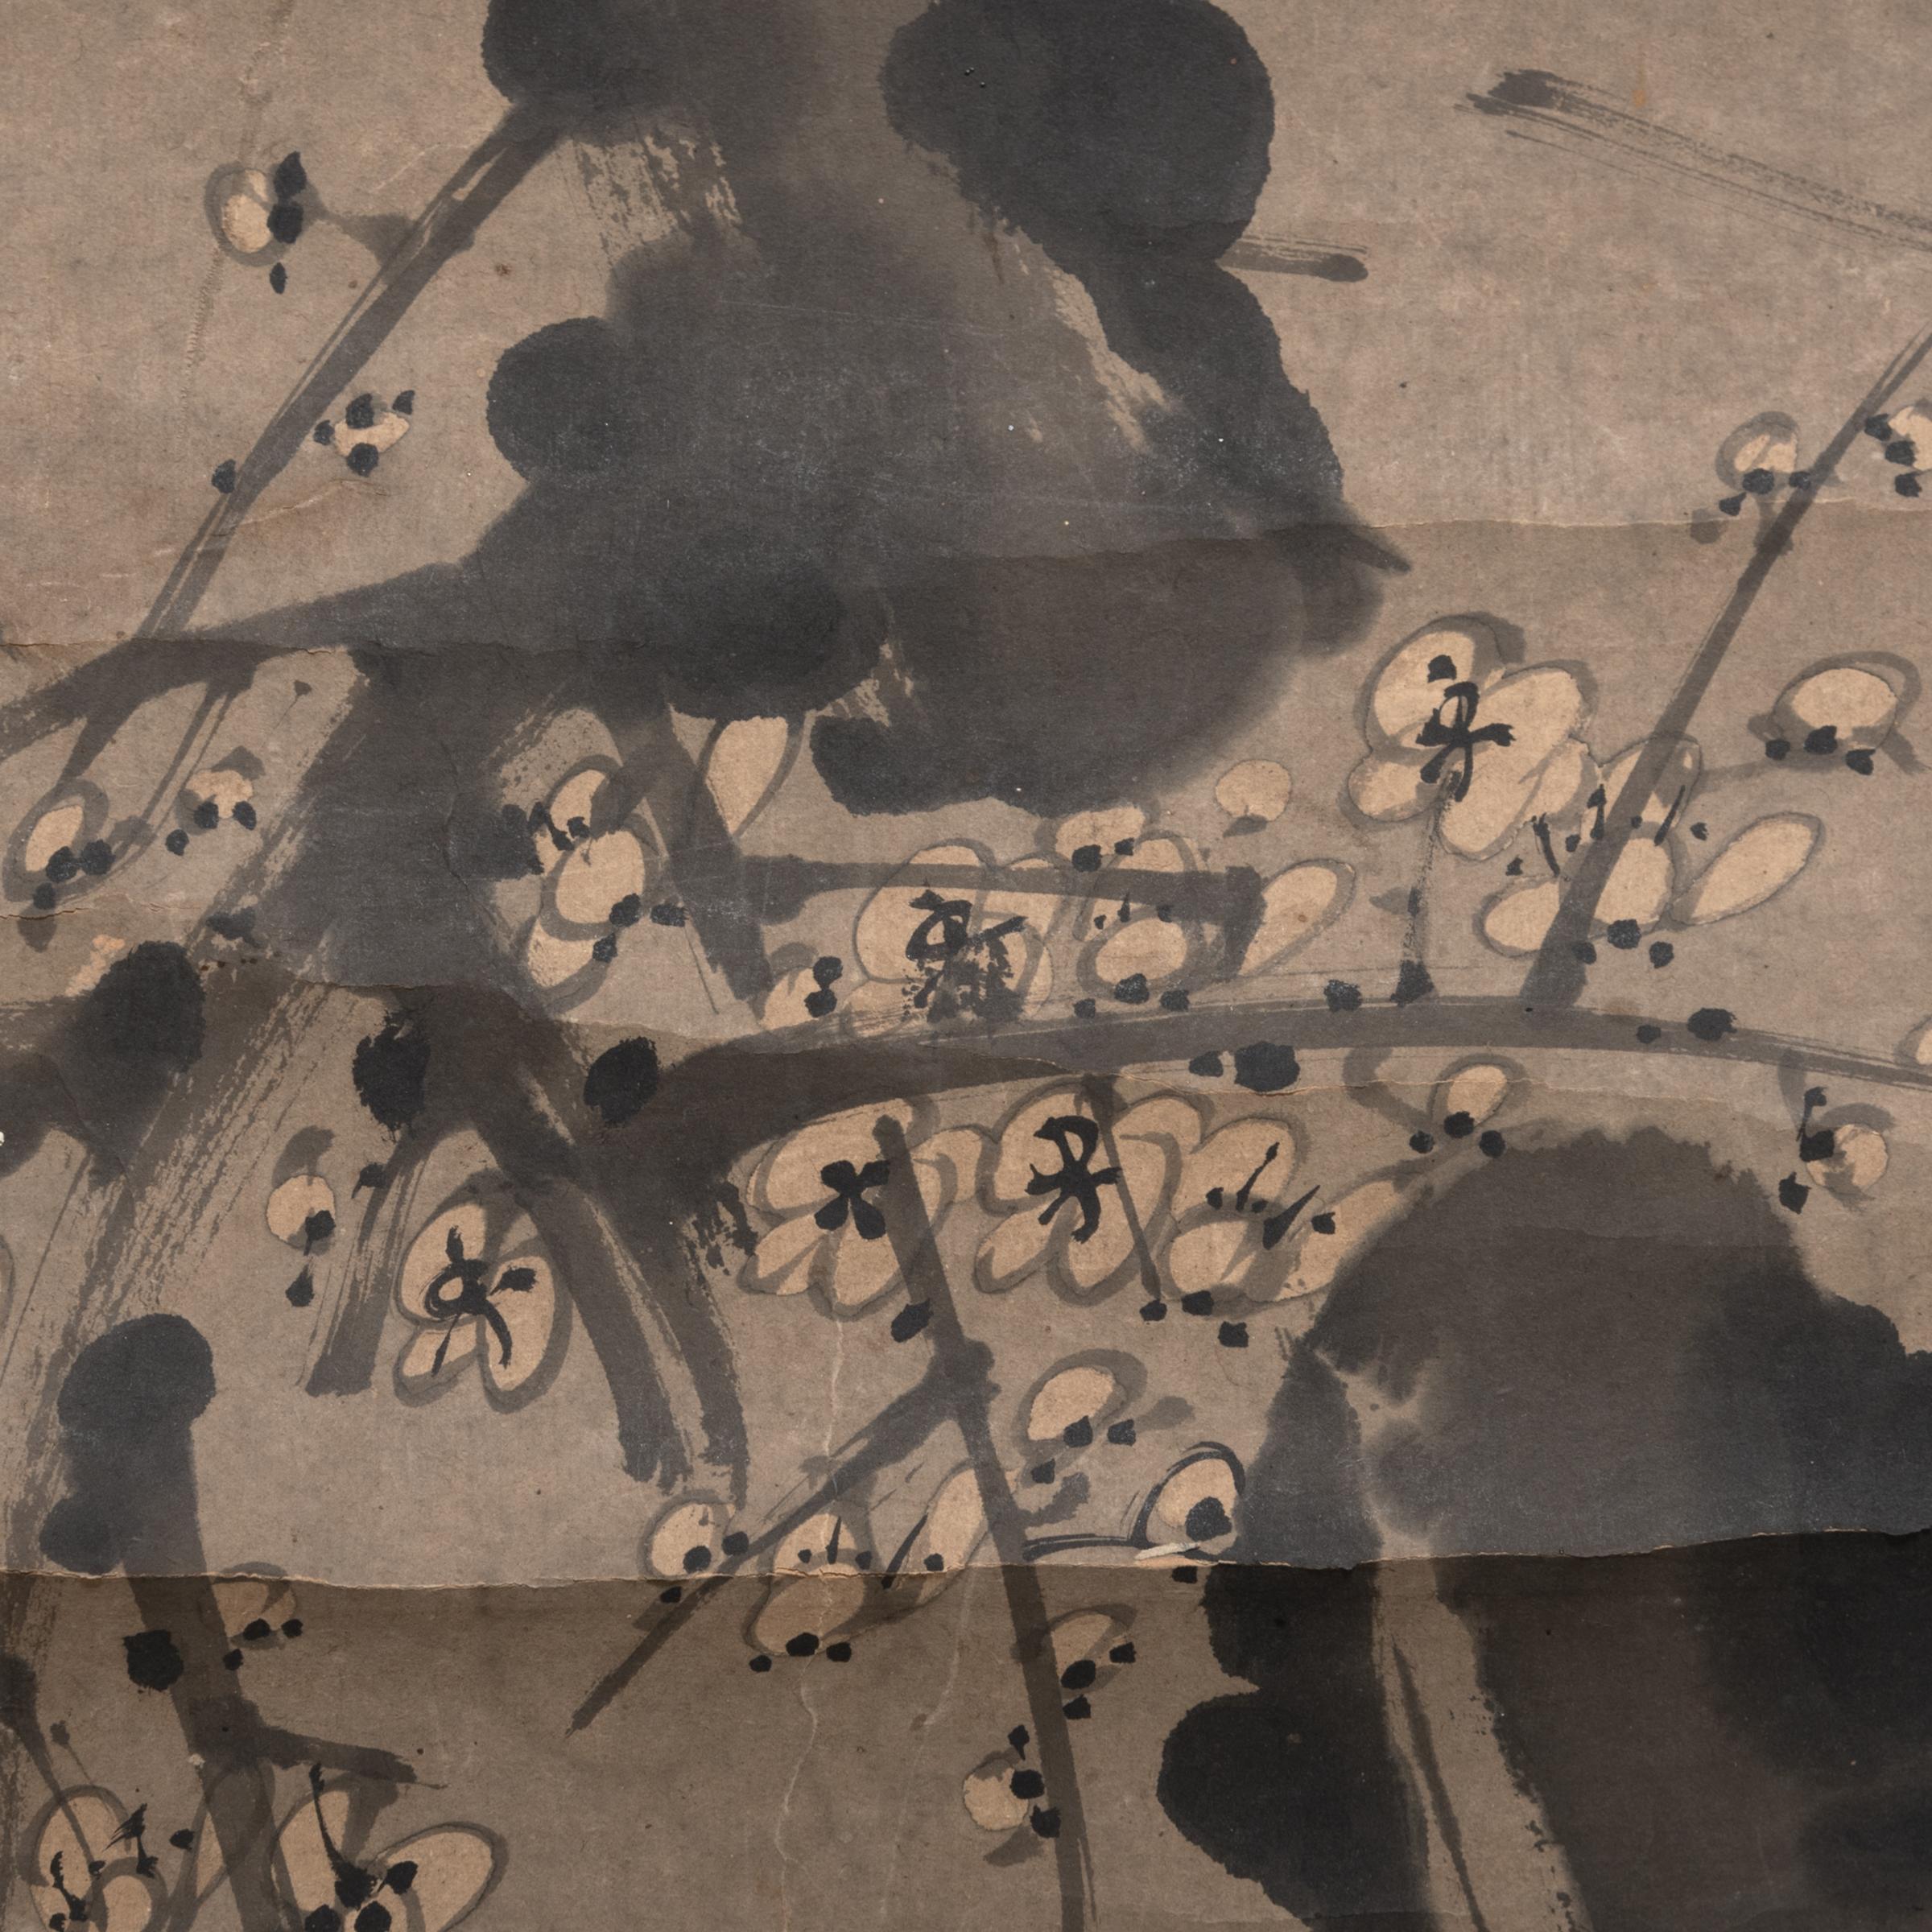 Chinesische Gelehrte benutzten natürliche Bilder und Landschaften, um die Kontemplation in ihren Ateliers zu fördern. Die komplexe Schönheit von Landschaften und natürlichen Formen inspirierte zu einem klaren und präzisen Denken. Diese Betonung